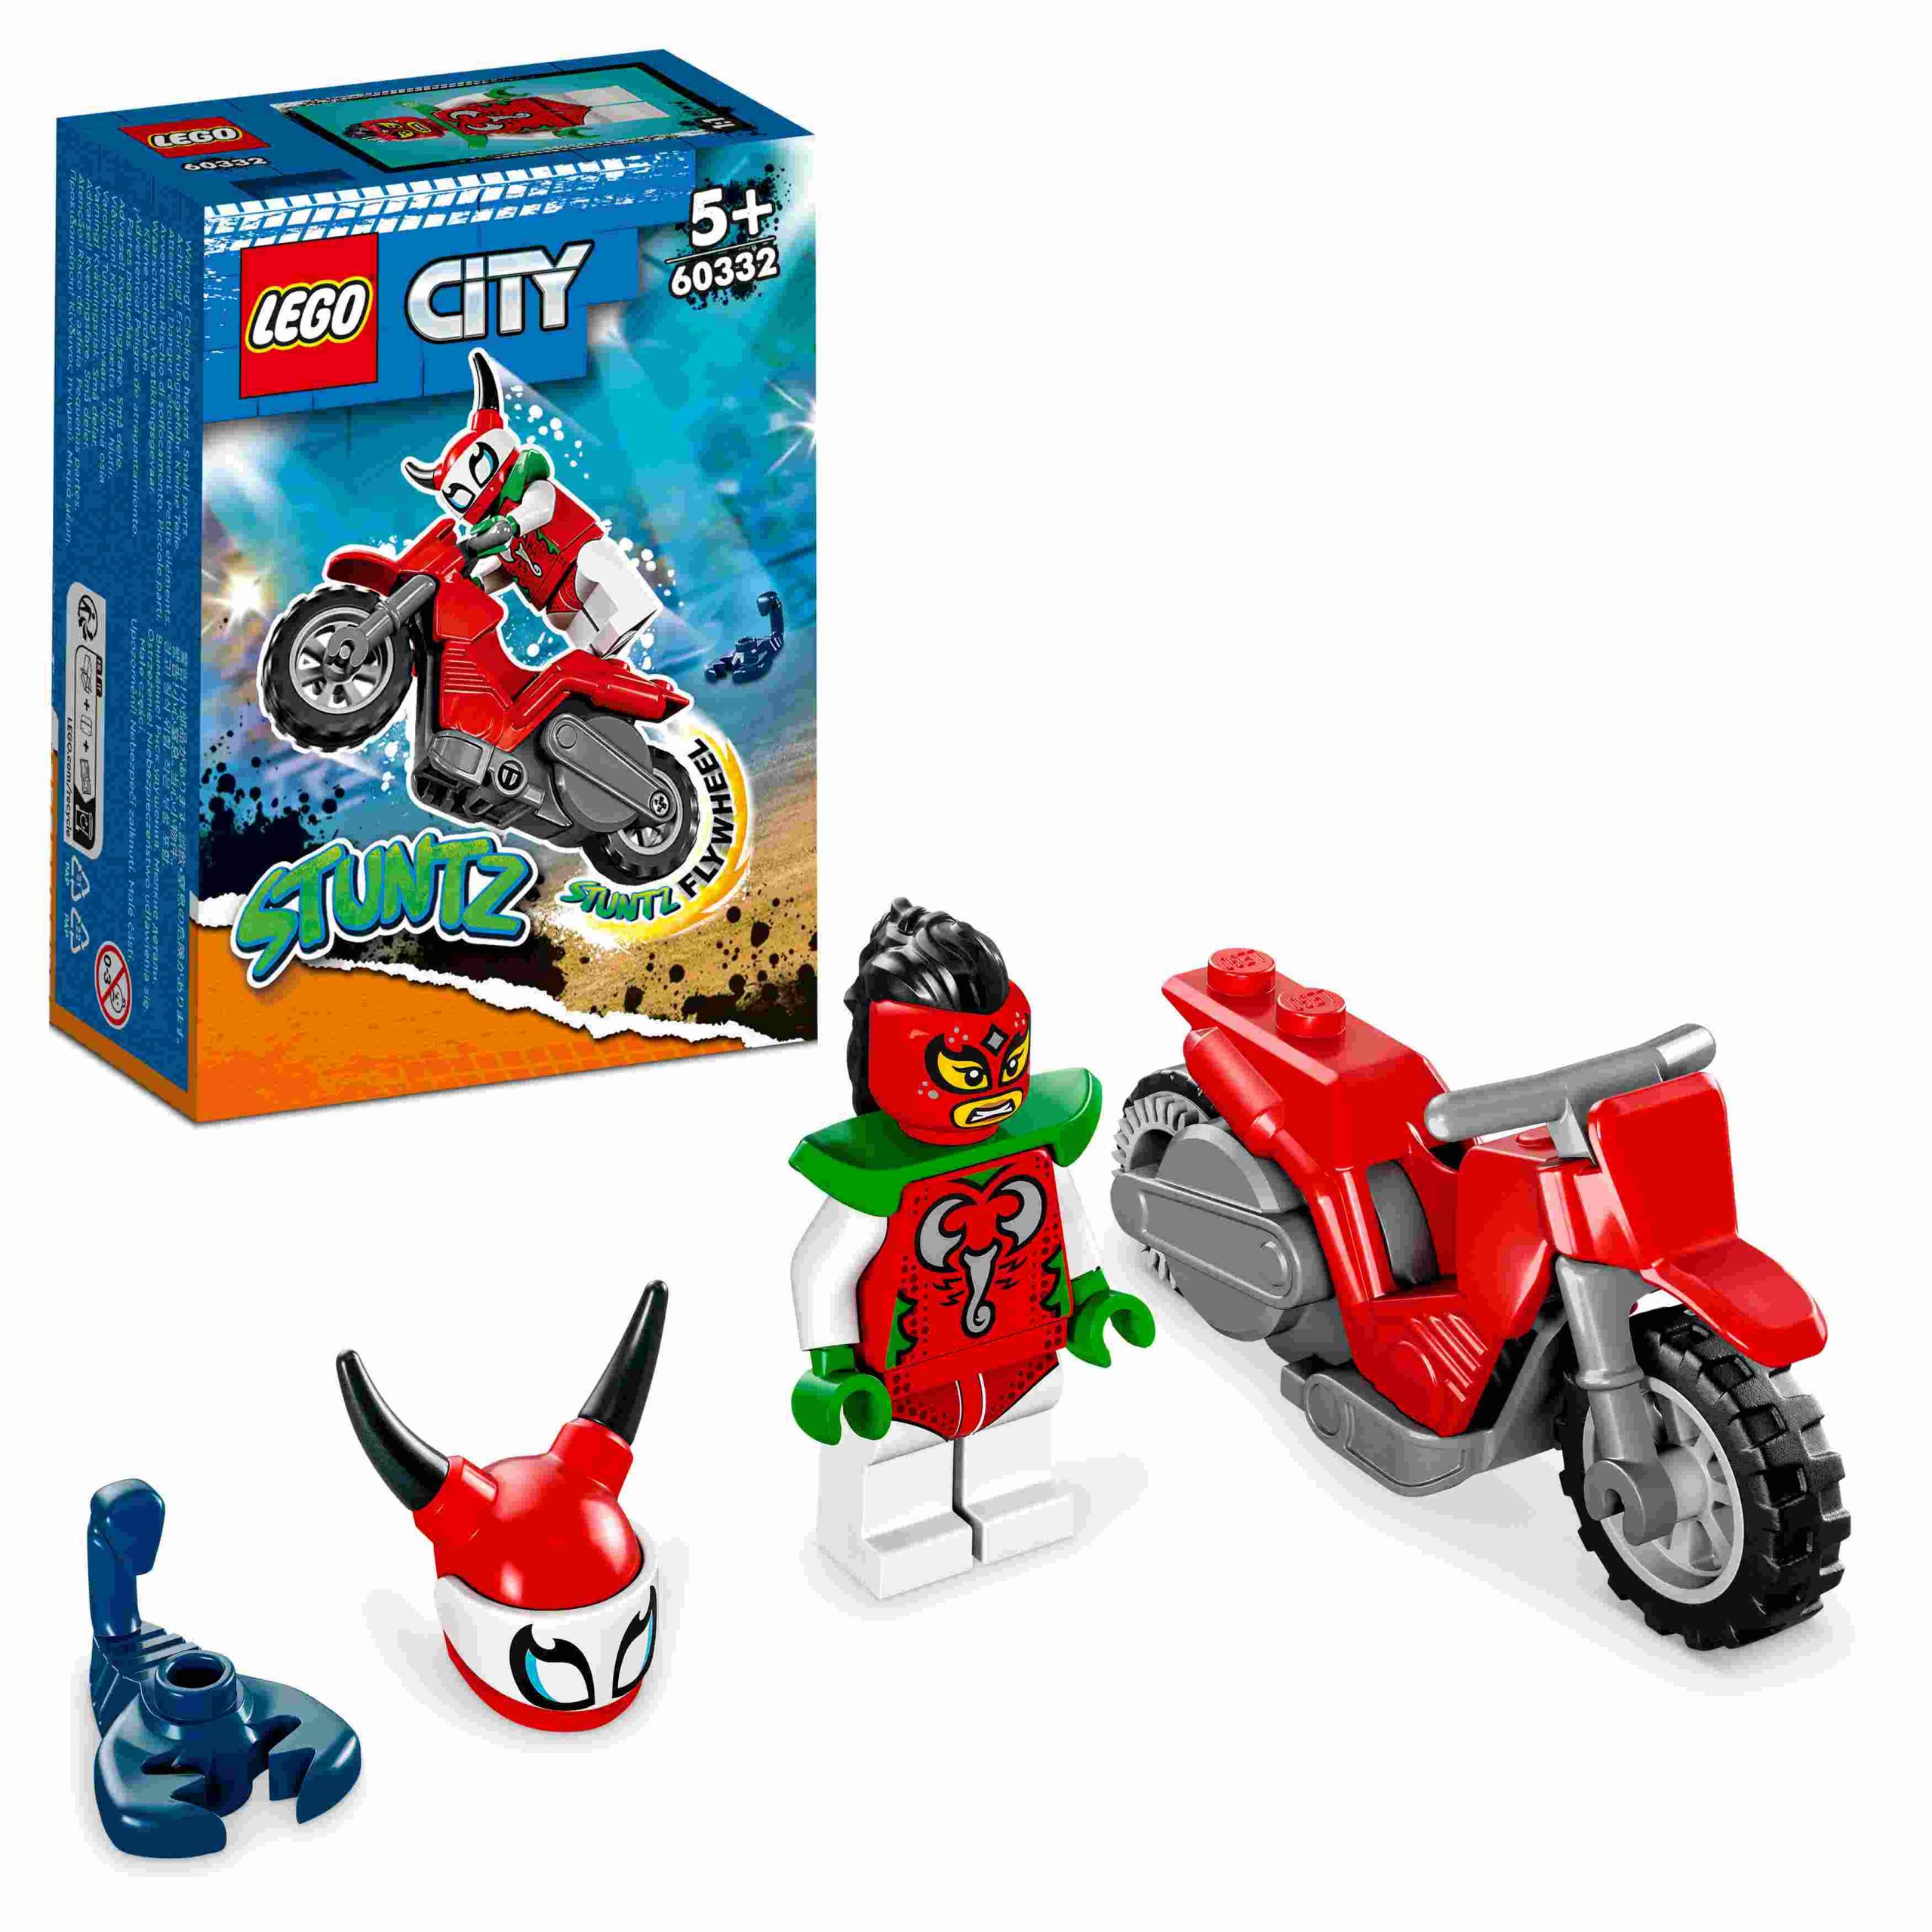 Lego city stuntz 60332 stunt bike​ scorpione spericolato, moto giocattolo, giochi per bambini dai 5 anni in su, idea regalo - LEGO CITY, LEGO CITY STUNTZ, Lego